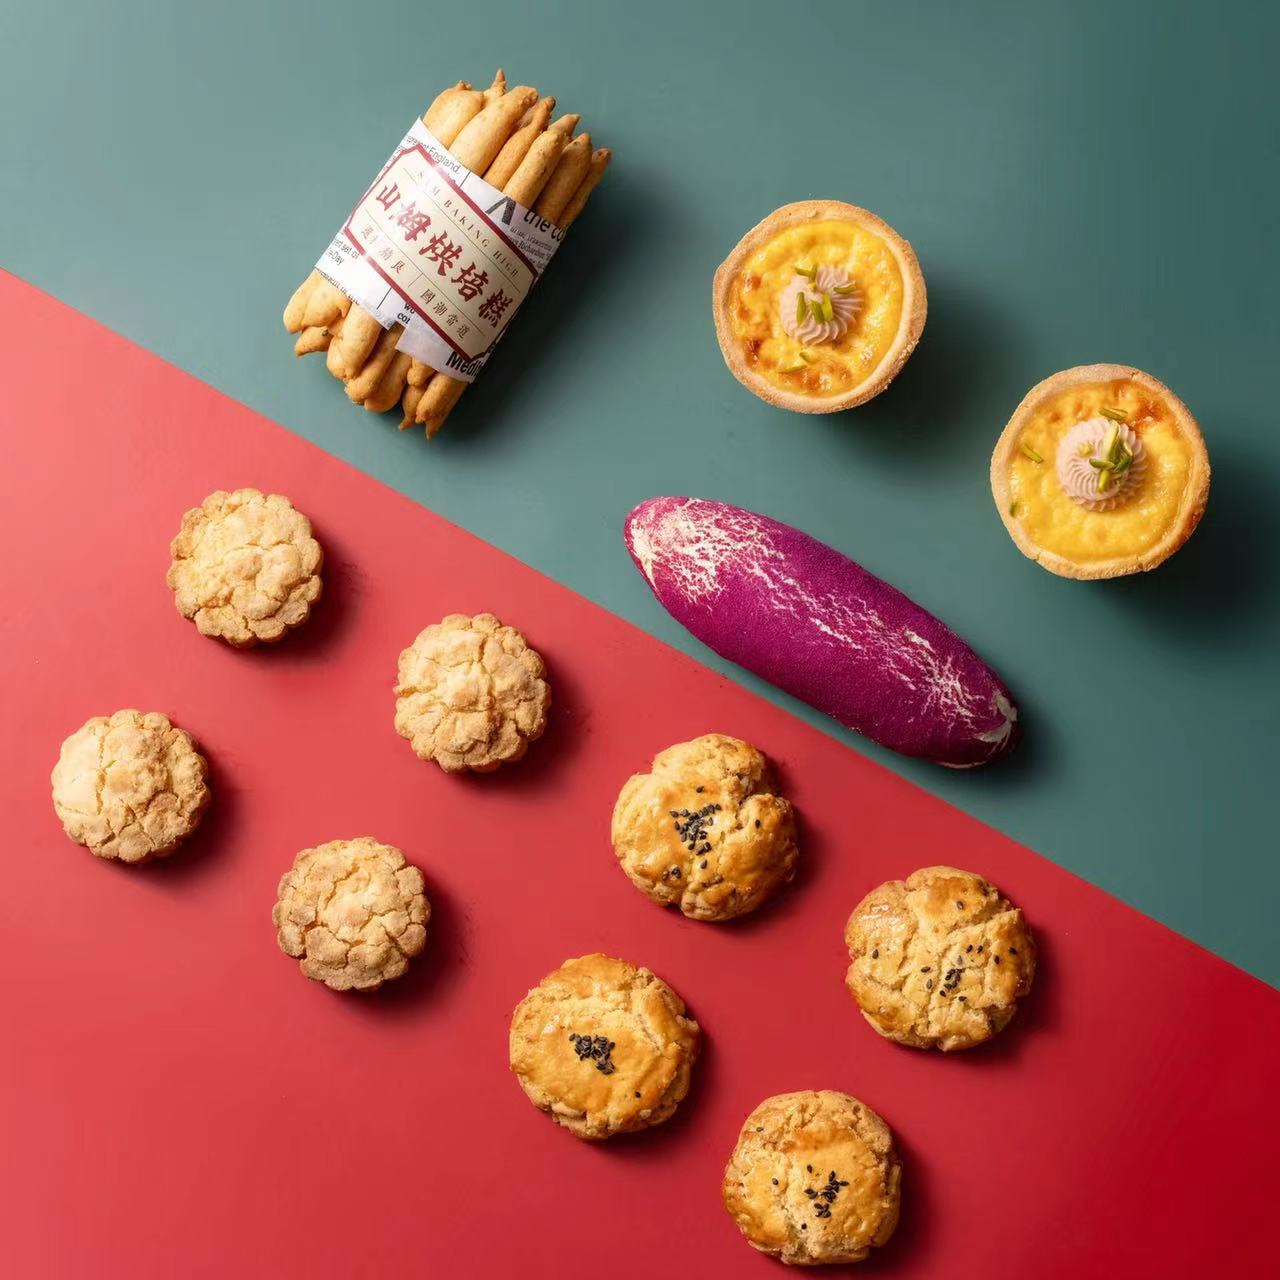 [MEMORABLE] Asian Cookie Tasting Box